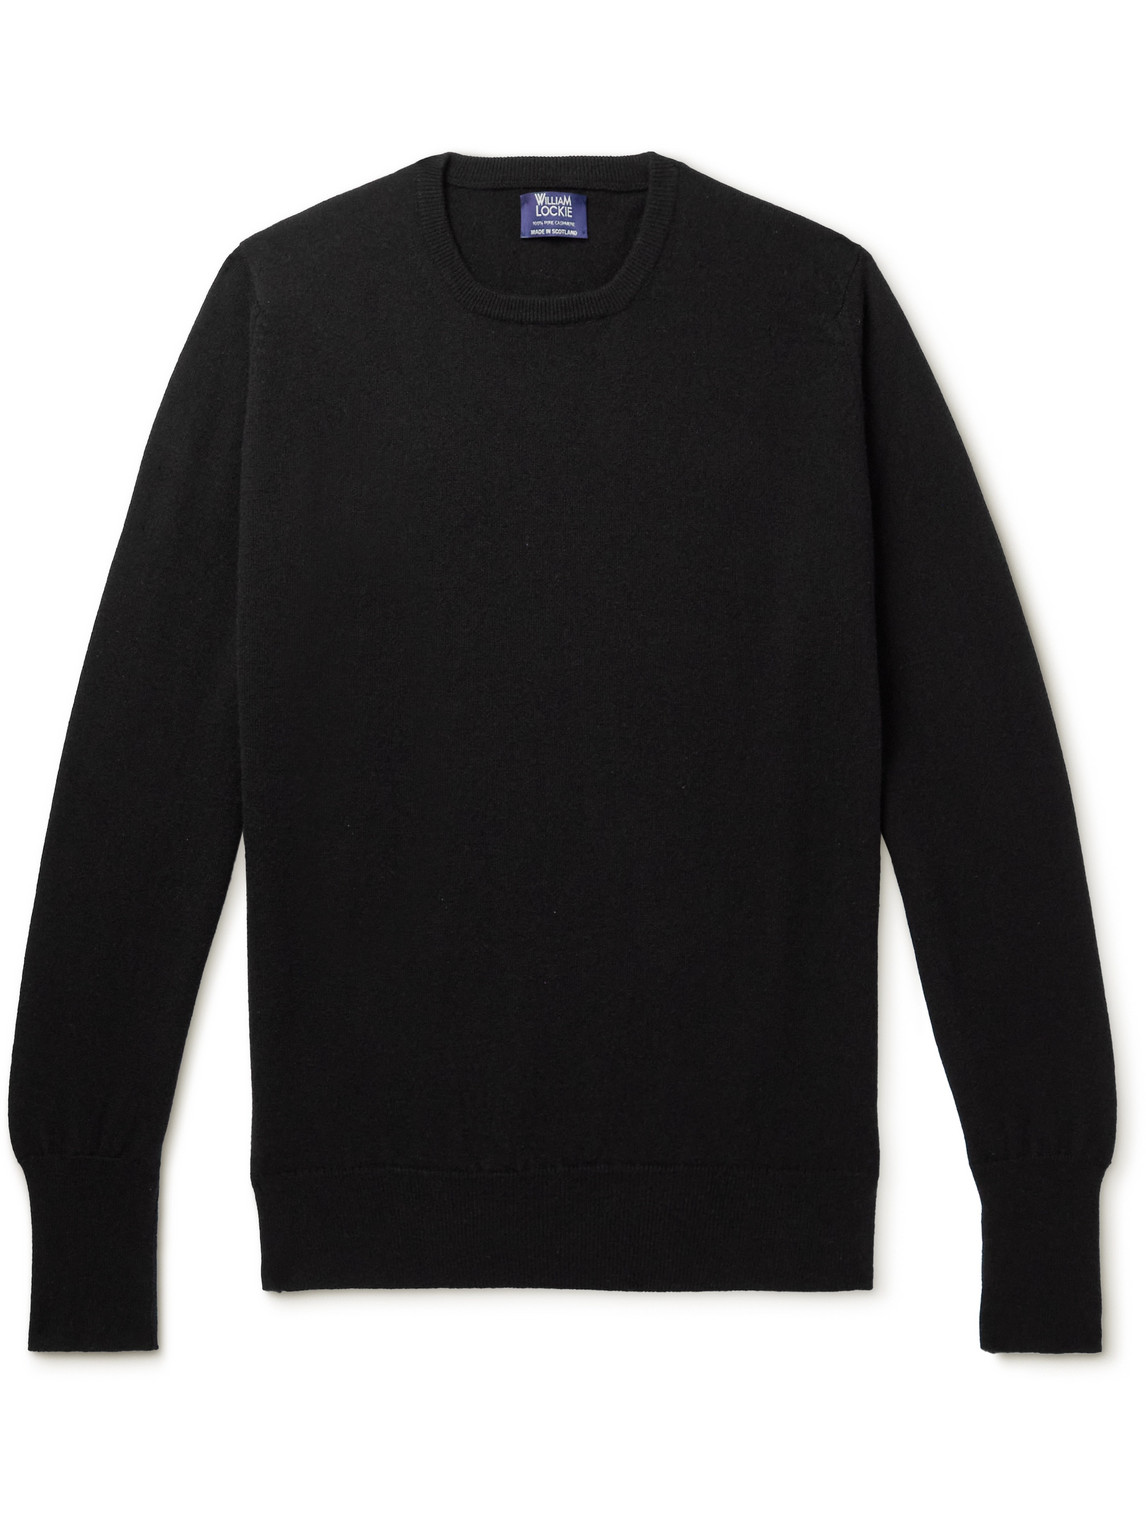 William Lockie Oxton Cashmere Sweater In Black